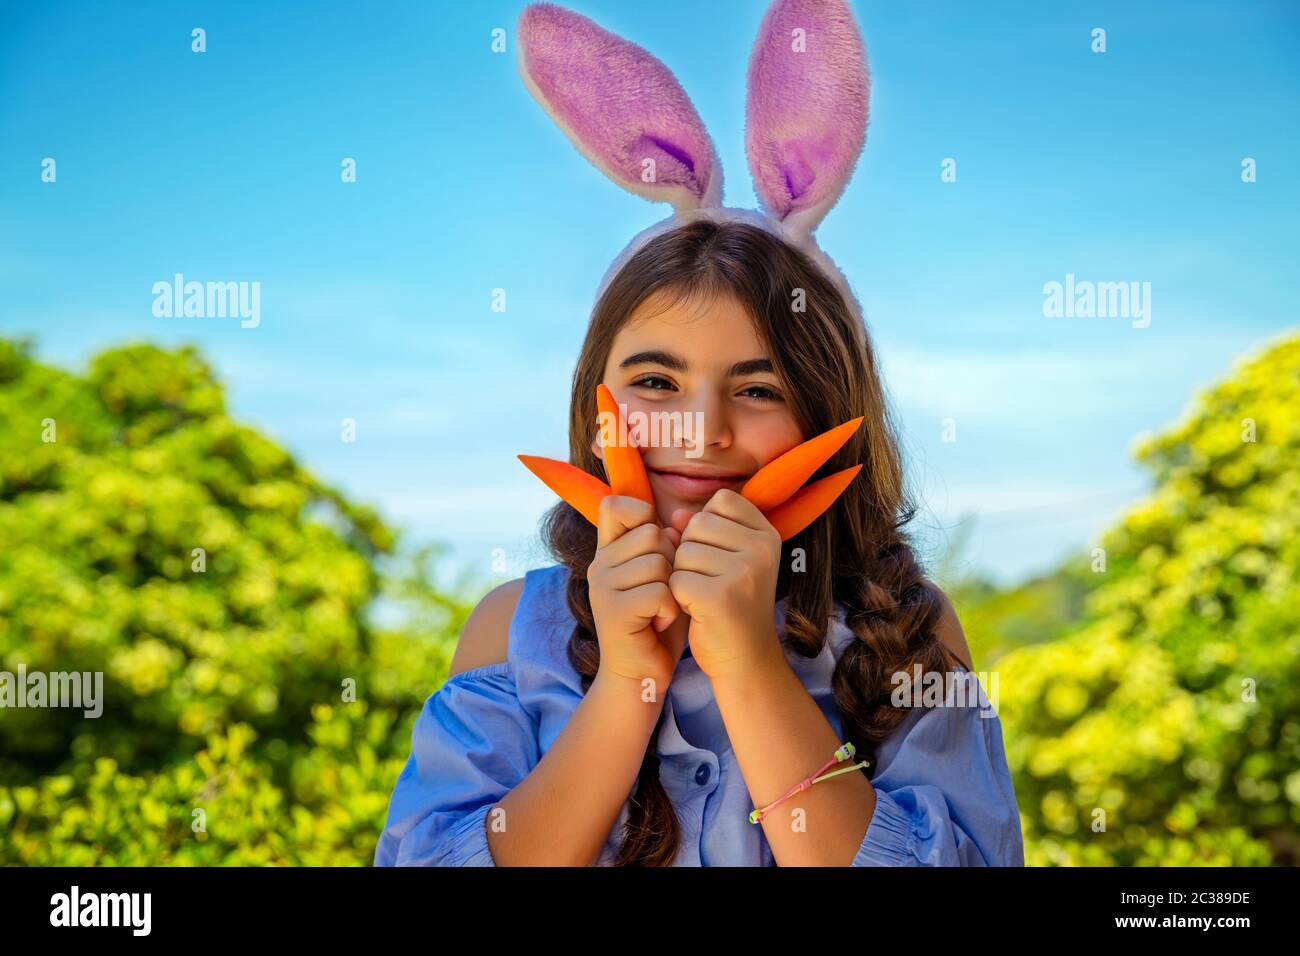 Portrait eines niedlichen kleinen Mädchens, gekleidet als Hünenspiel mit Karotten, Gartenarbeit und Spaß im Freien am sonnigen Frühlingstag, Osterfeier Outdoo Stockfoto